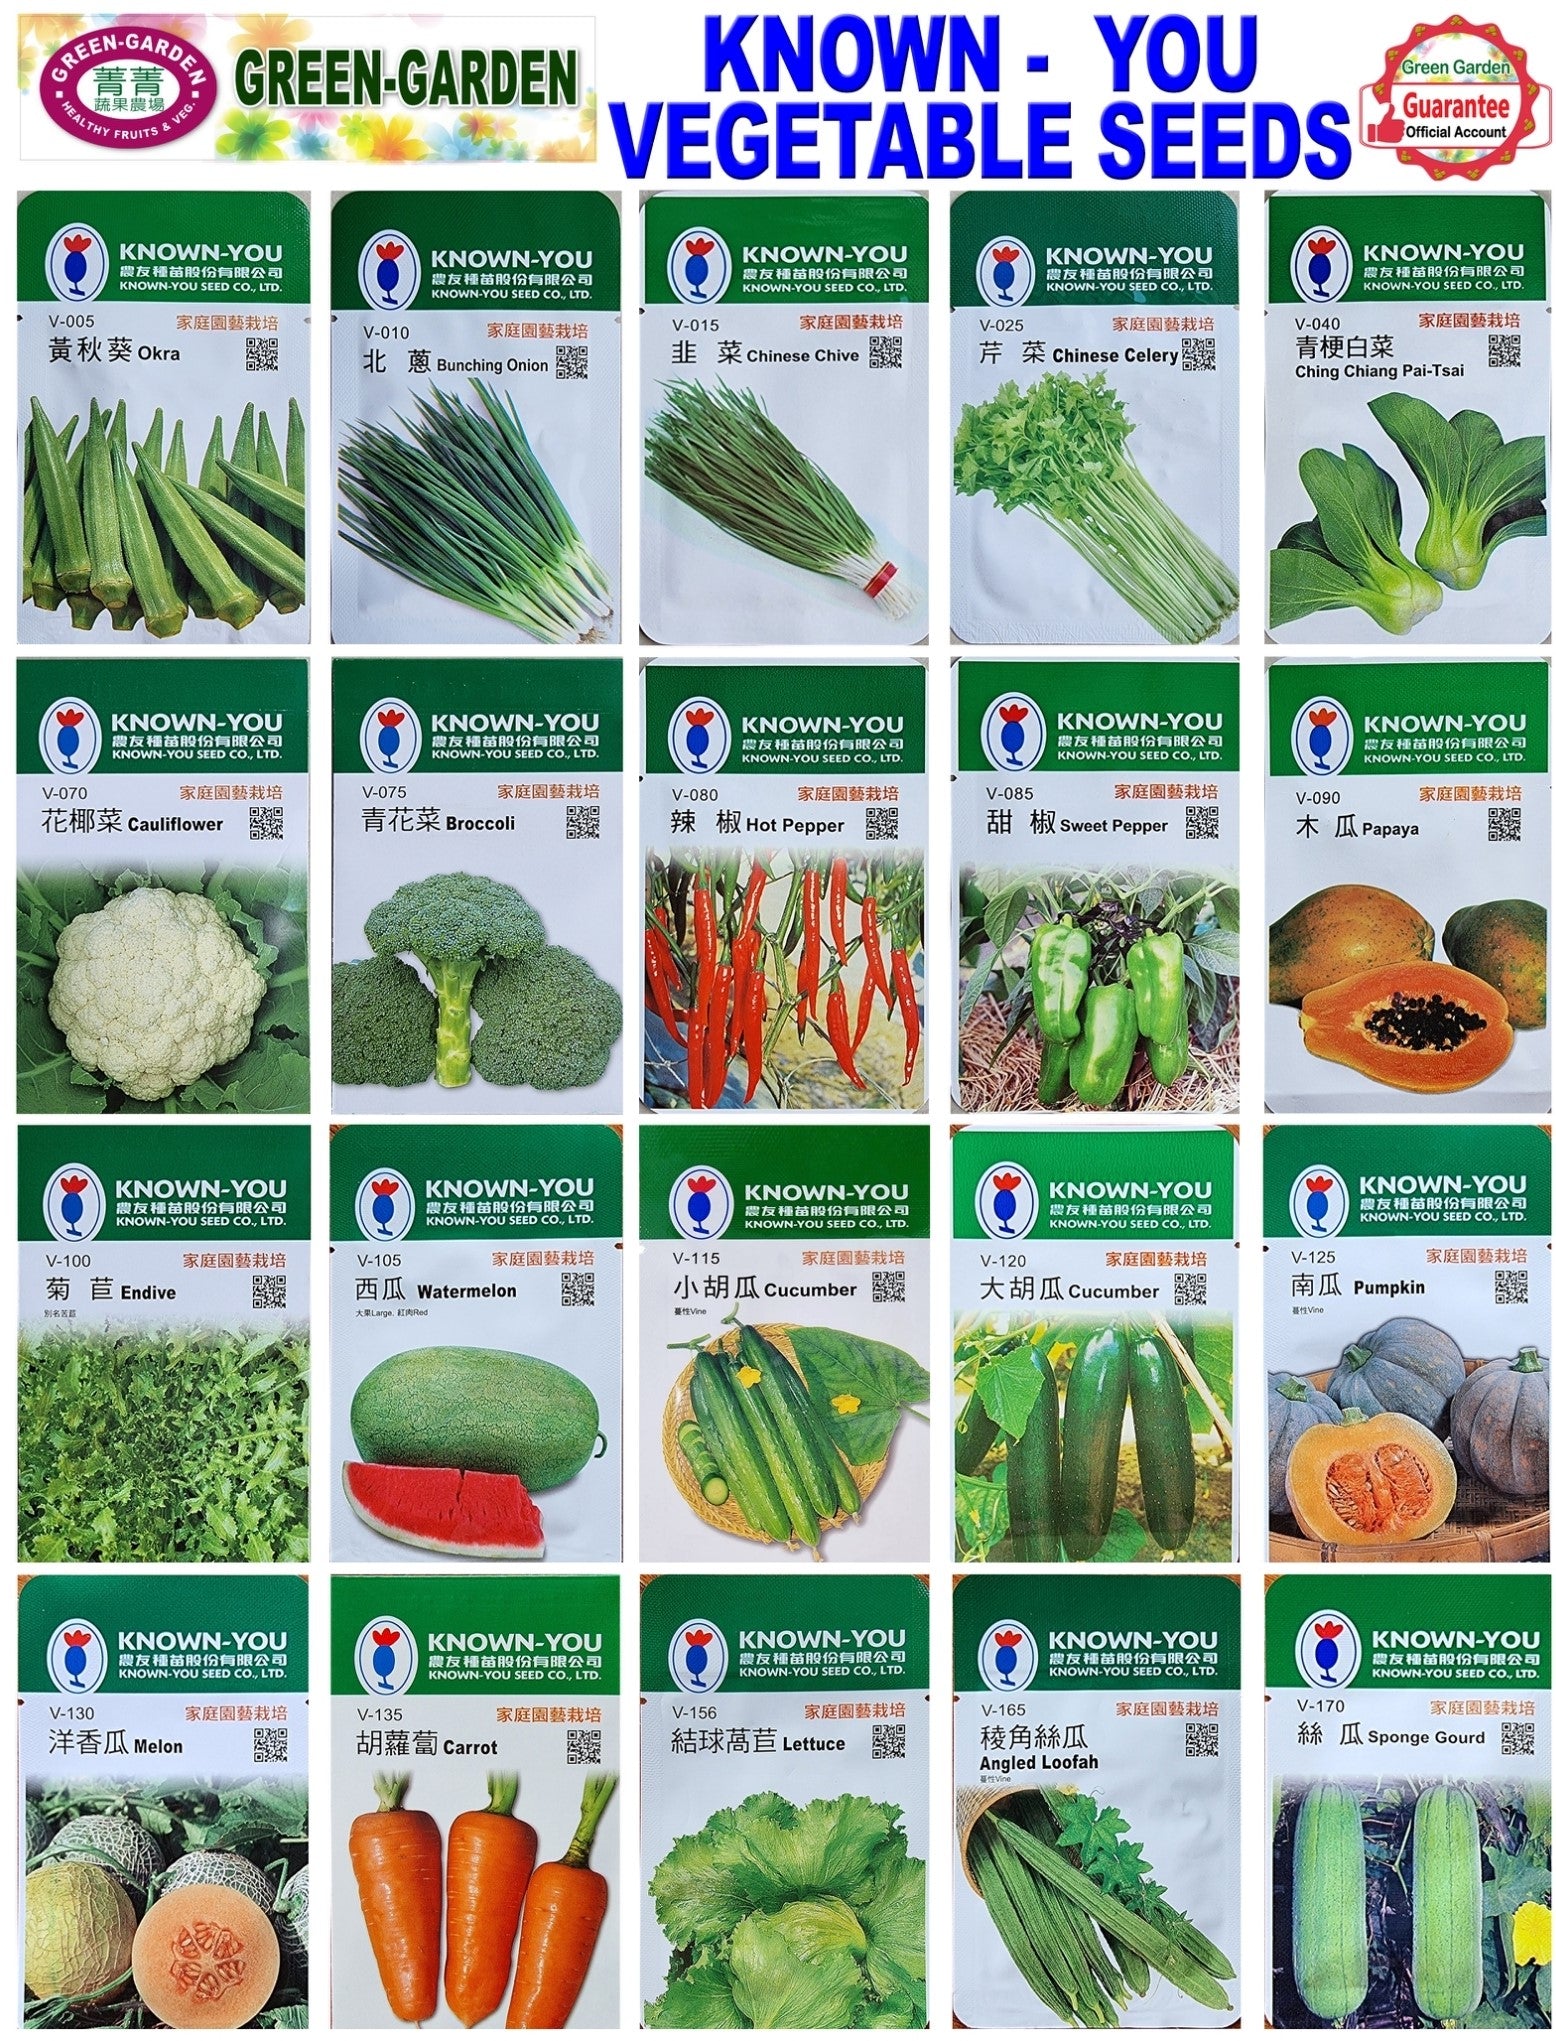 Known You Vegetable Seeds (V-100 Endive)